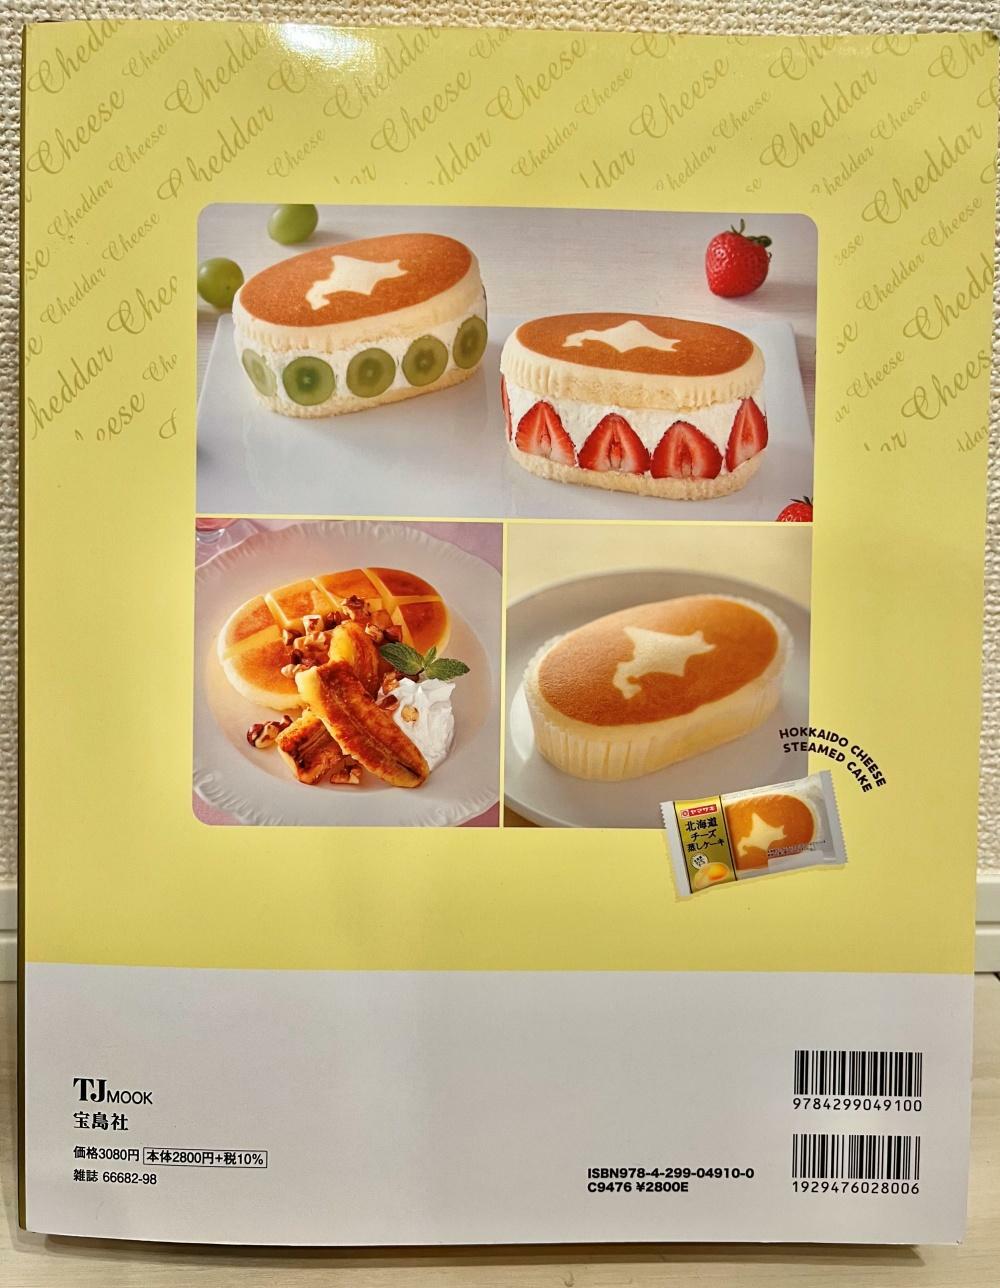 裏面には「チーズ蒸しケーキ」を使ったアレンジスイーツの画像